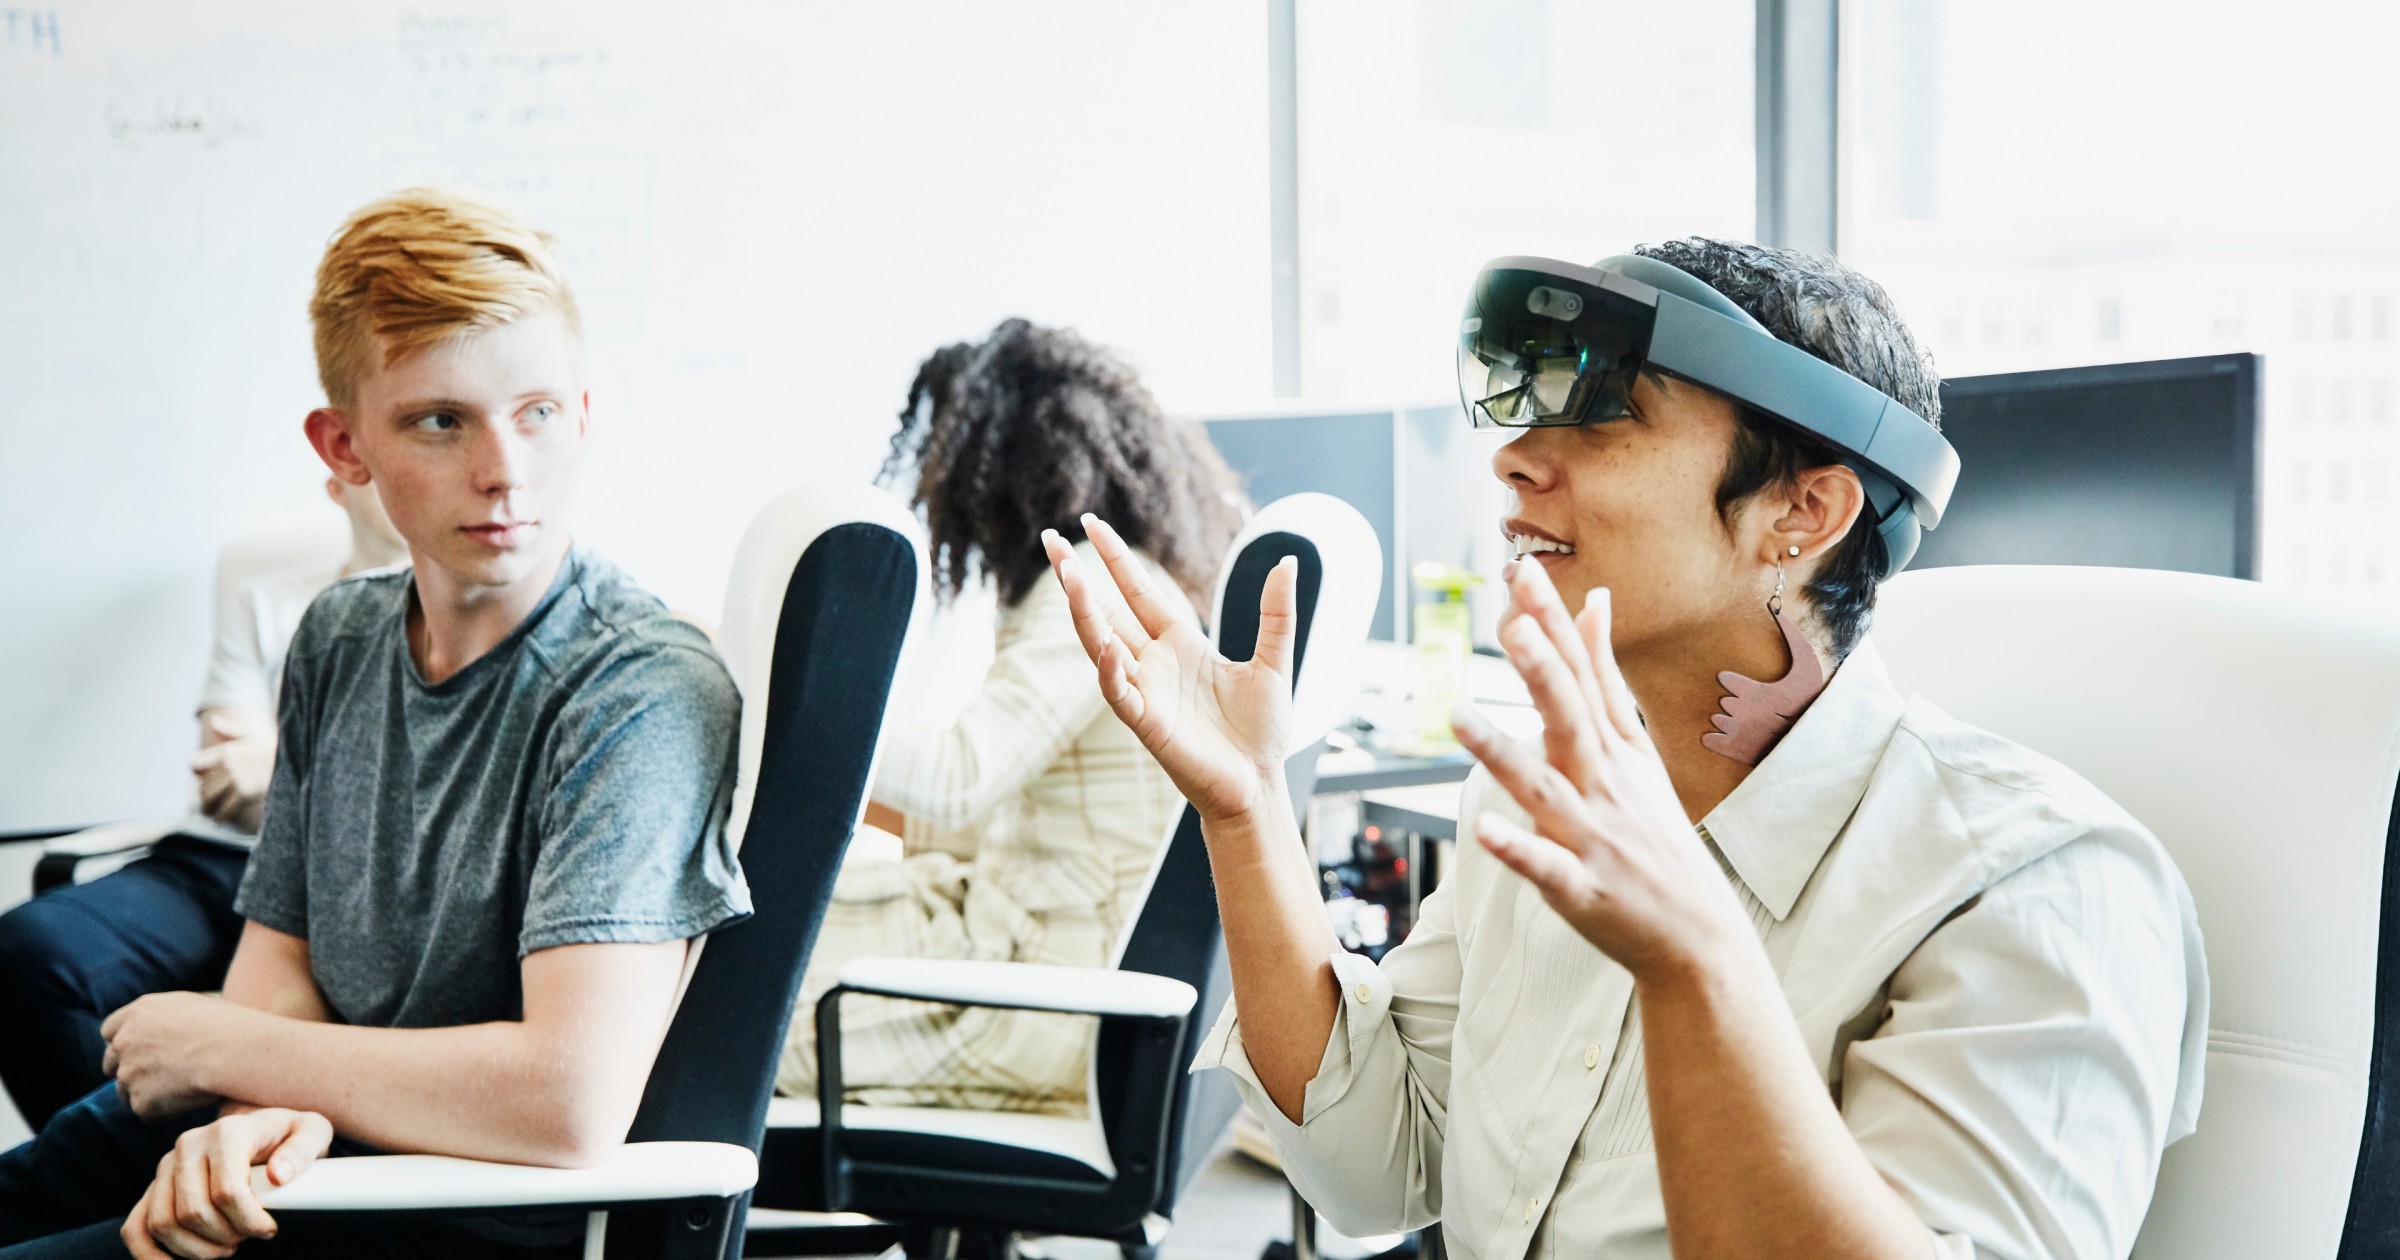 Vrouwelijke ingenieur in gesprek met collega tijdens het testen van programma op augmented reality-headset in computerlokaal